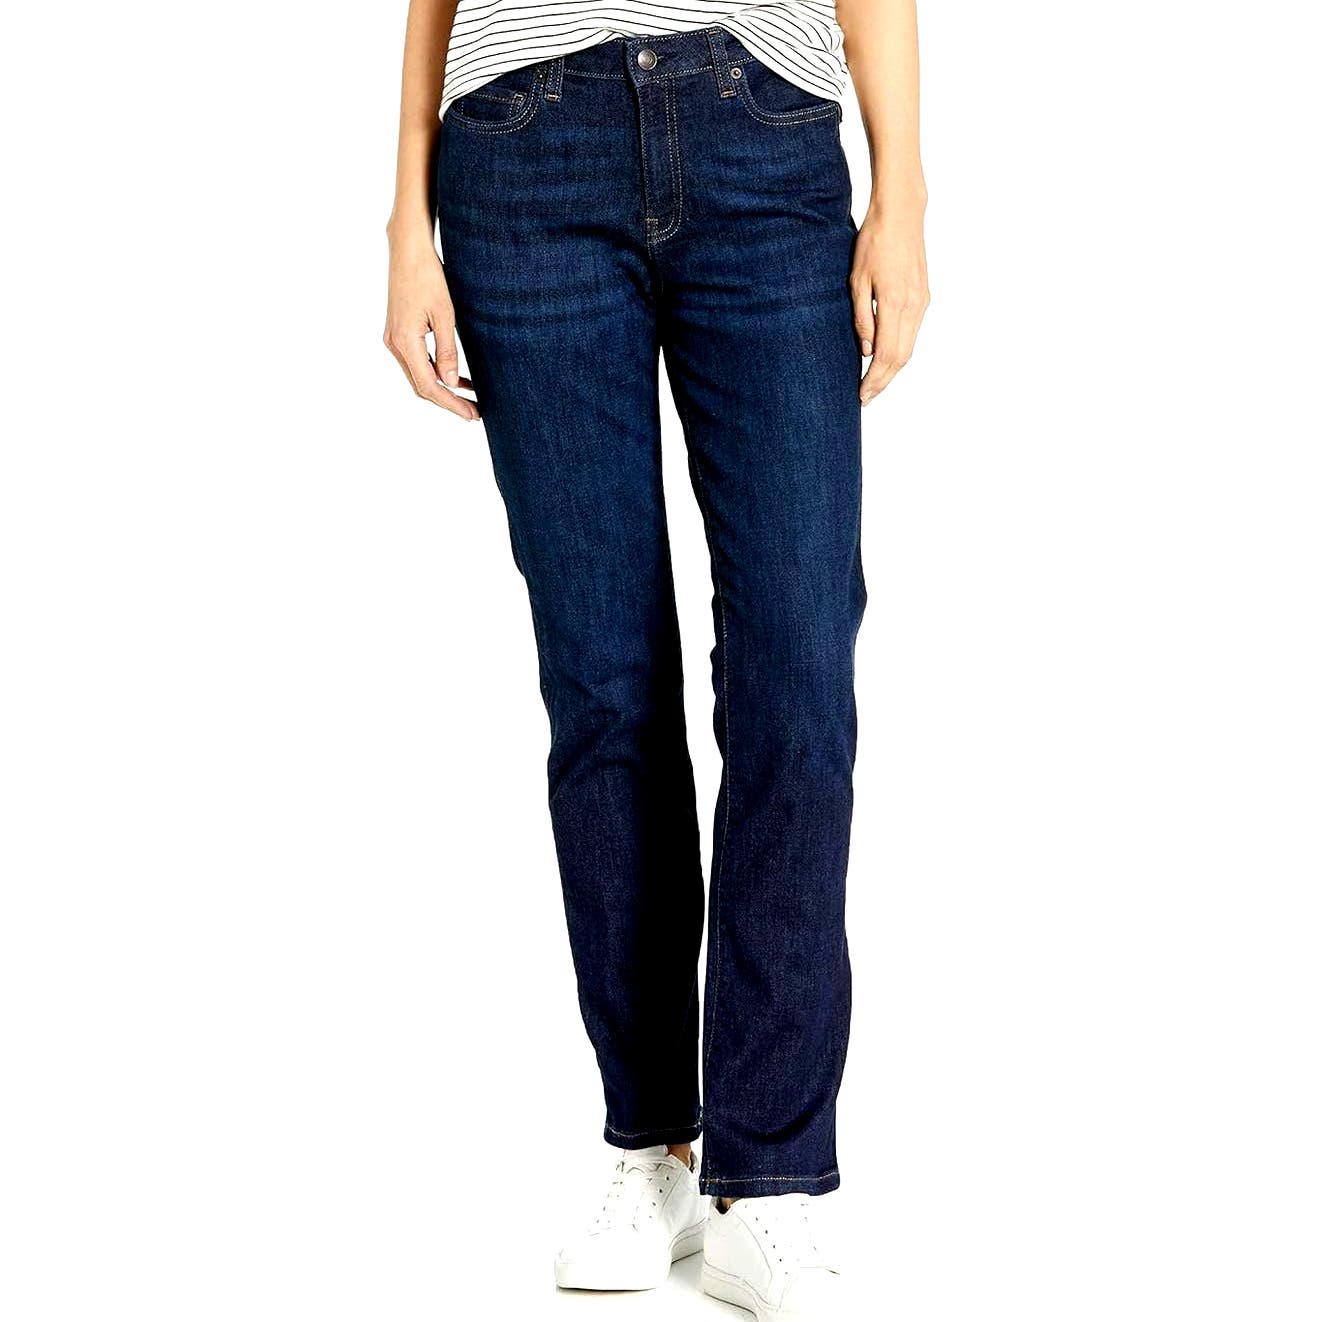 Amazon Essentials Women's Denim Slim Straight Blue Jeans, Dark Wash, 12 Long